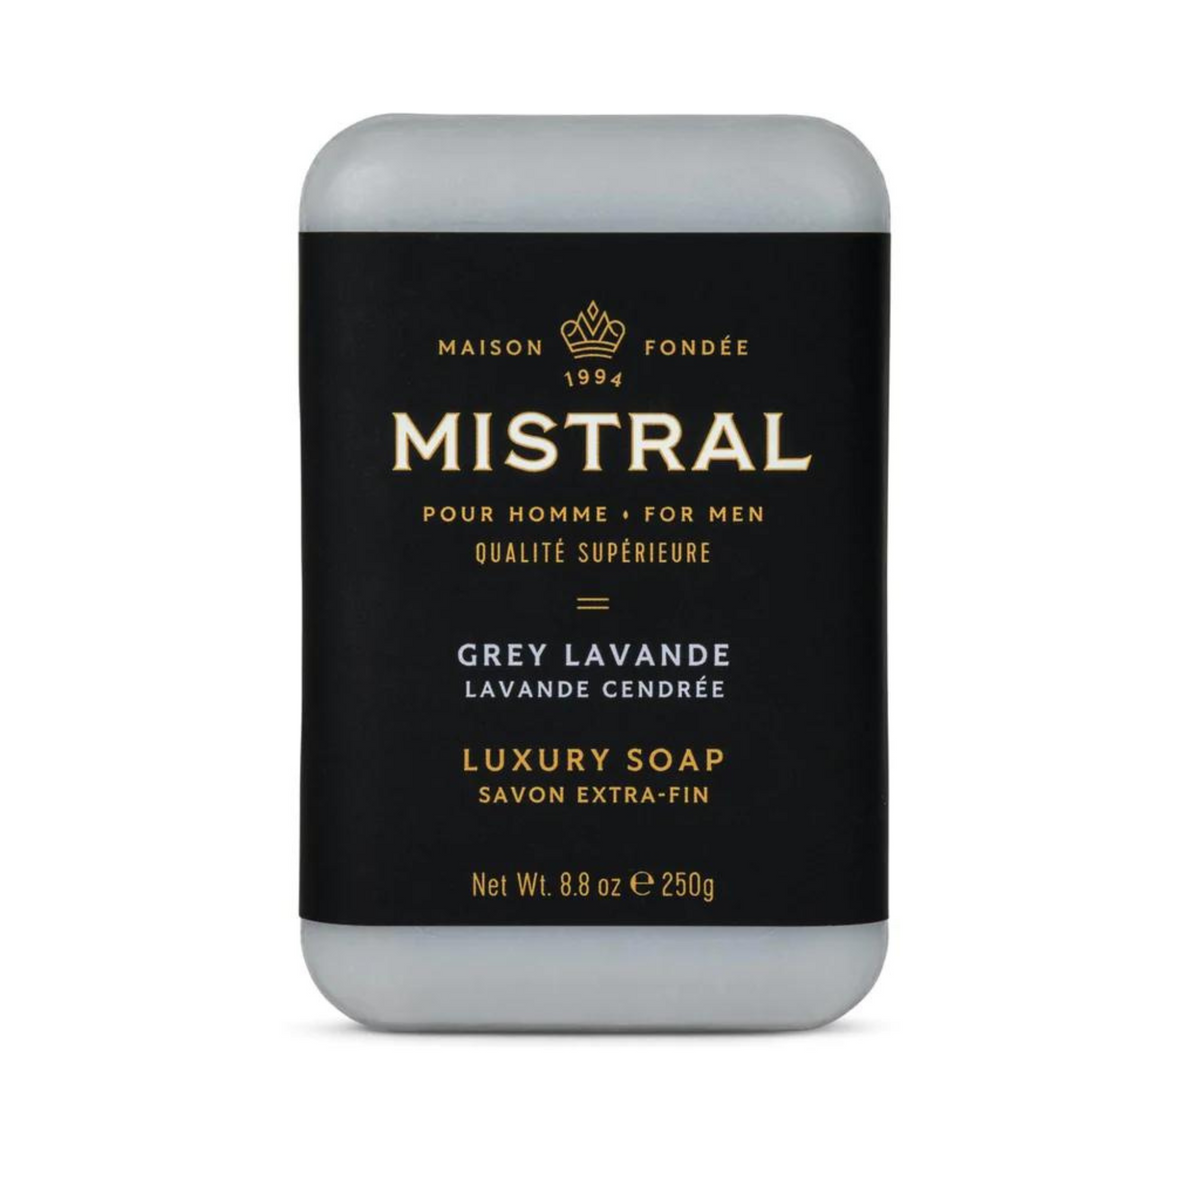 Primary Image of Mistral Grey Lavande Bar Soap (8.8 oz)